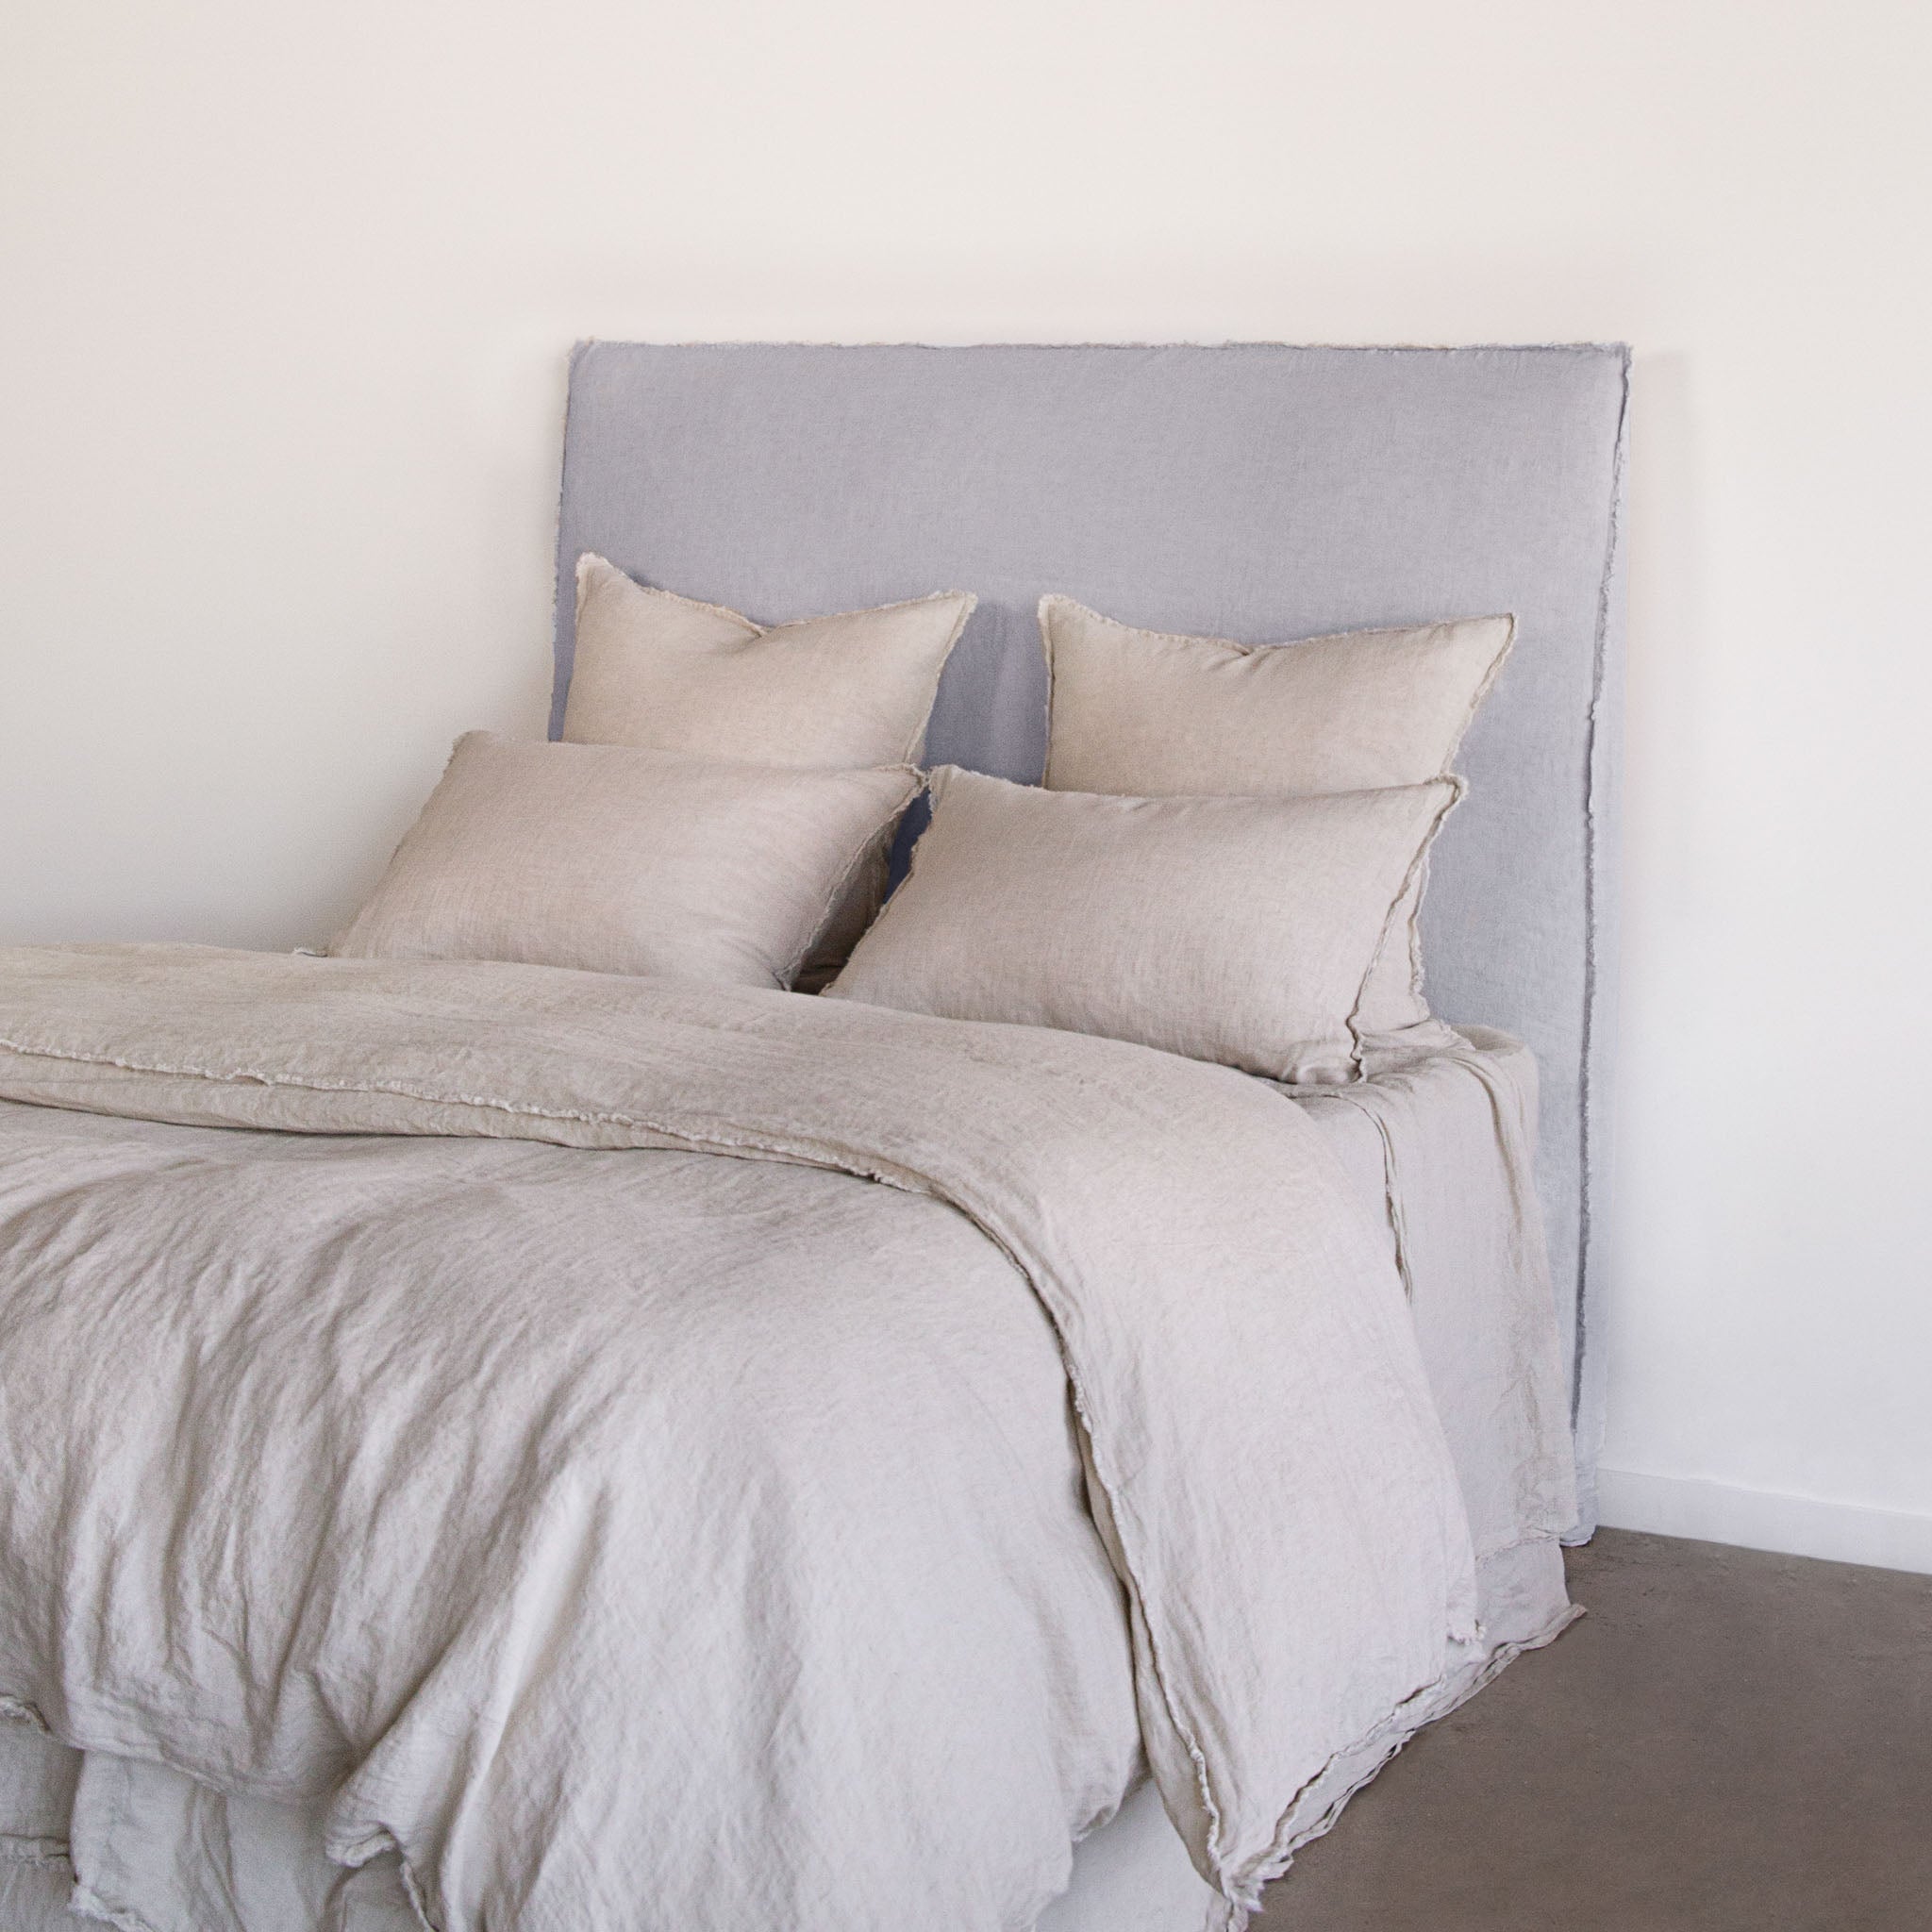 Linen Bedhead & Cover | Pale Grey | Hale Mercantile Co.